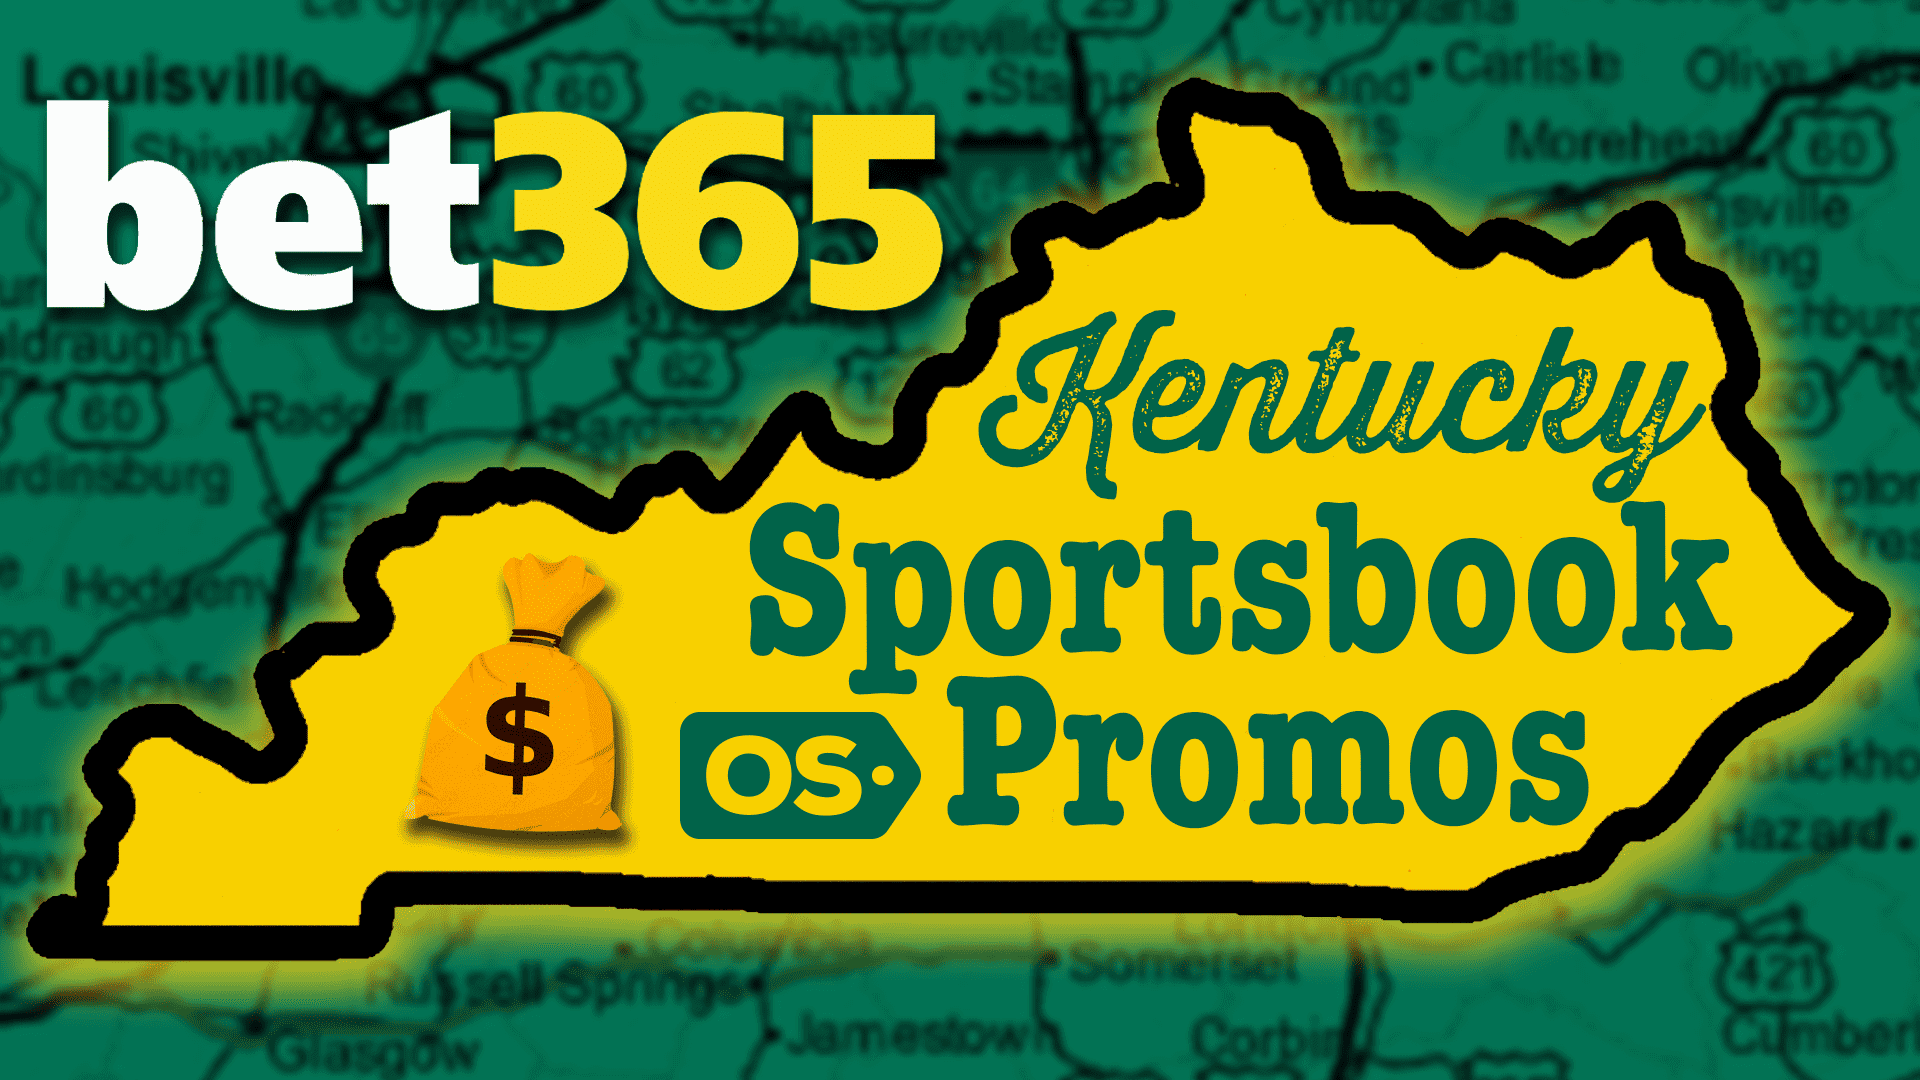 Bet365 Kentucky Bonus Code: Bet $1, Get $365 | Live Sept. 28